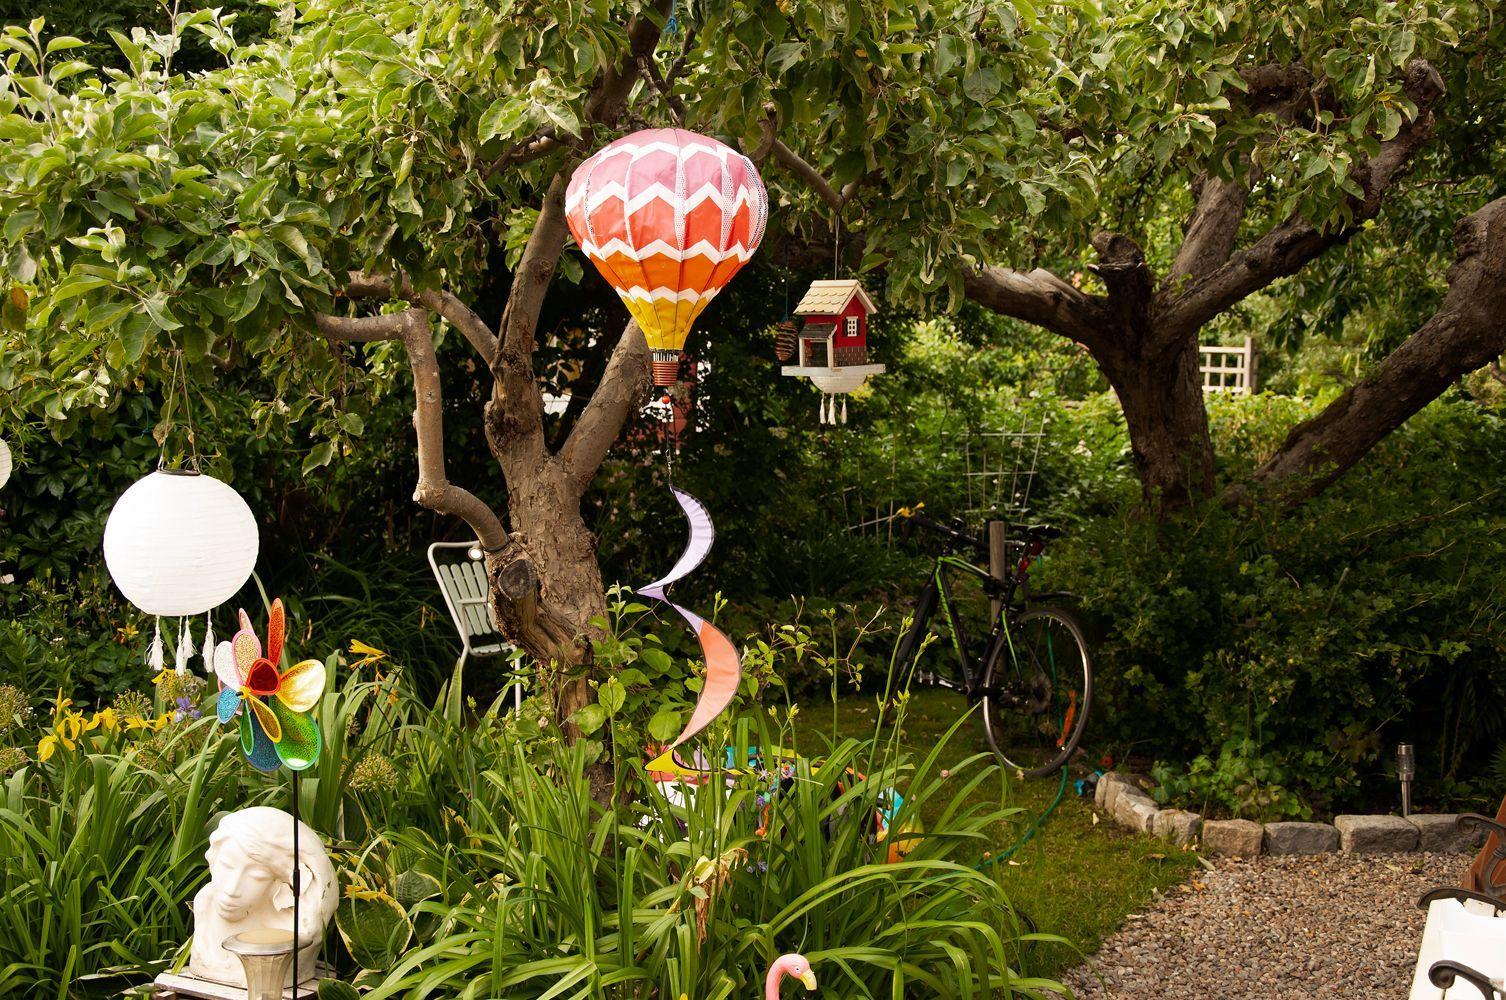 En mysig trädgårdsdunge med färgglada utsmyckningar i form av fågelmatare, luftballong, rislampa, vindsnurror.